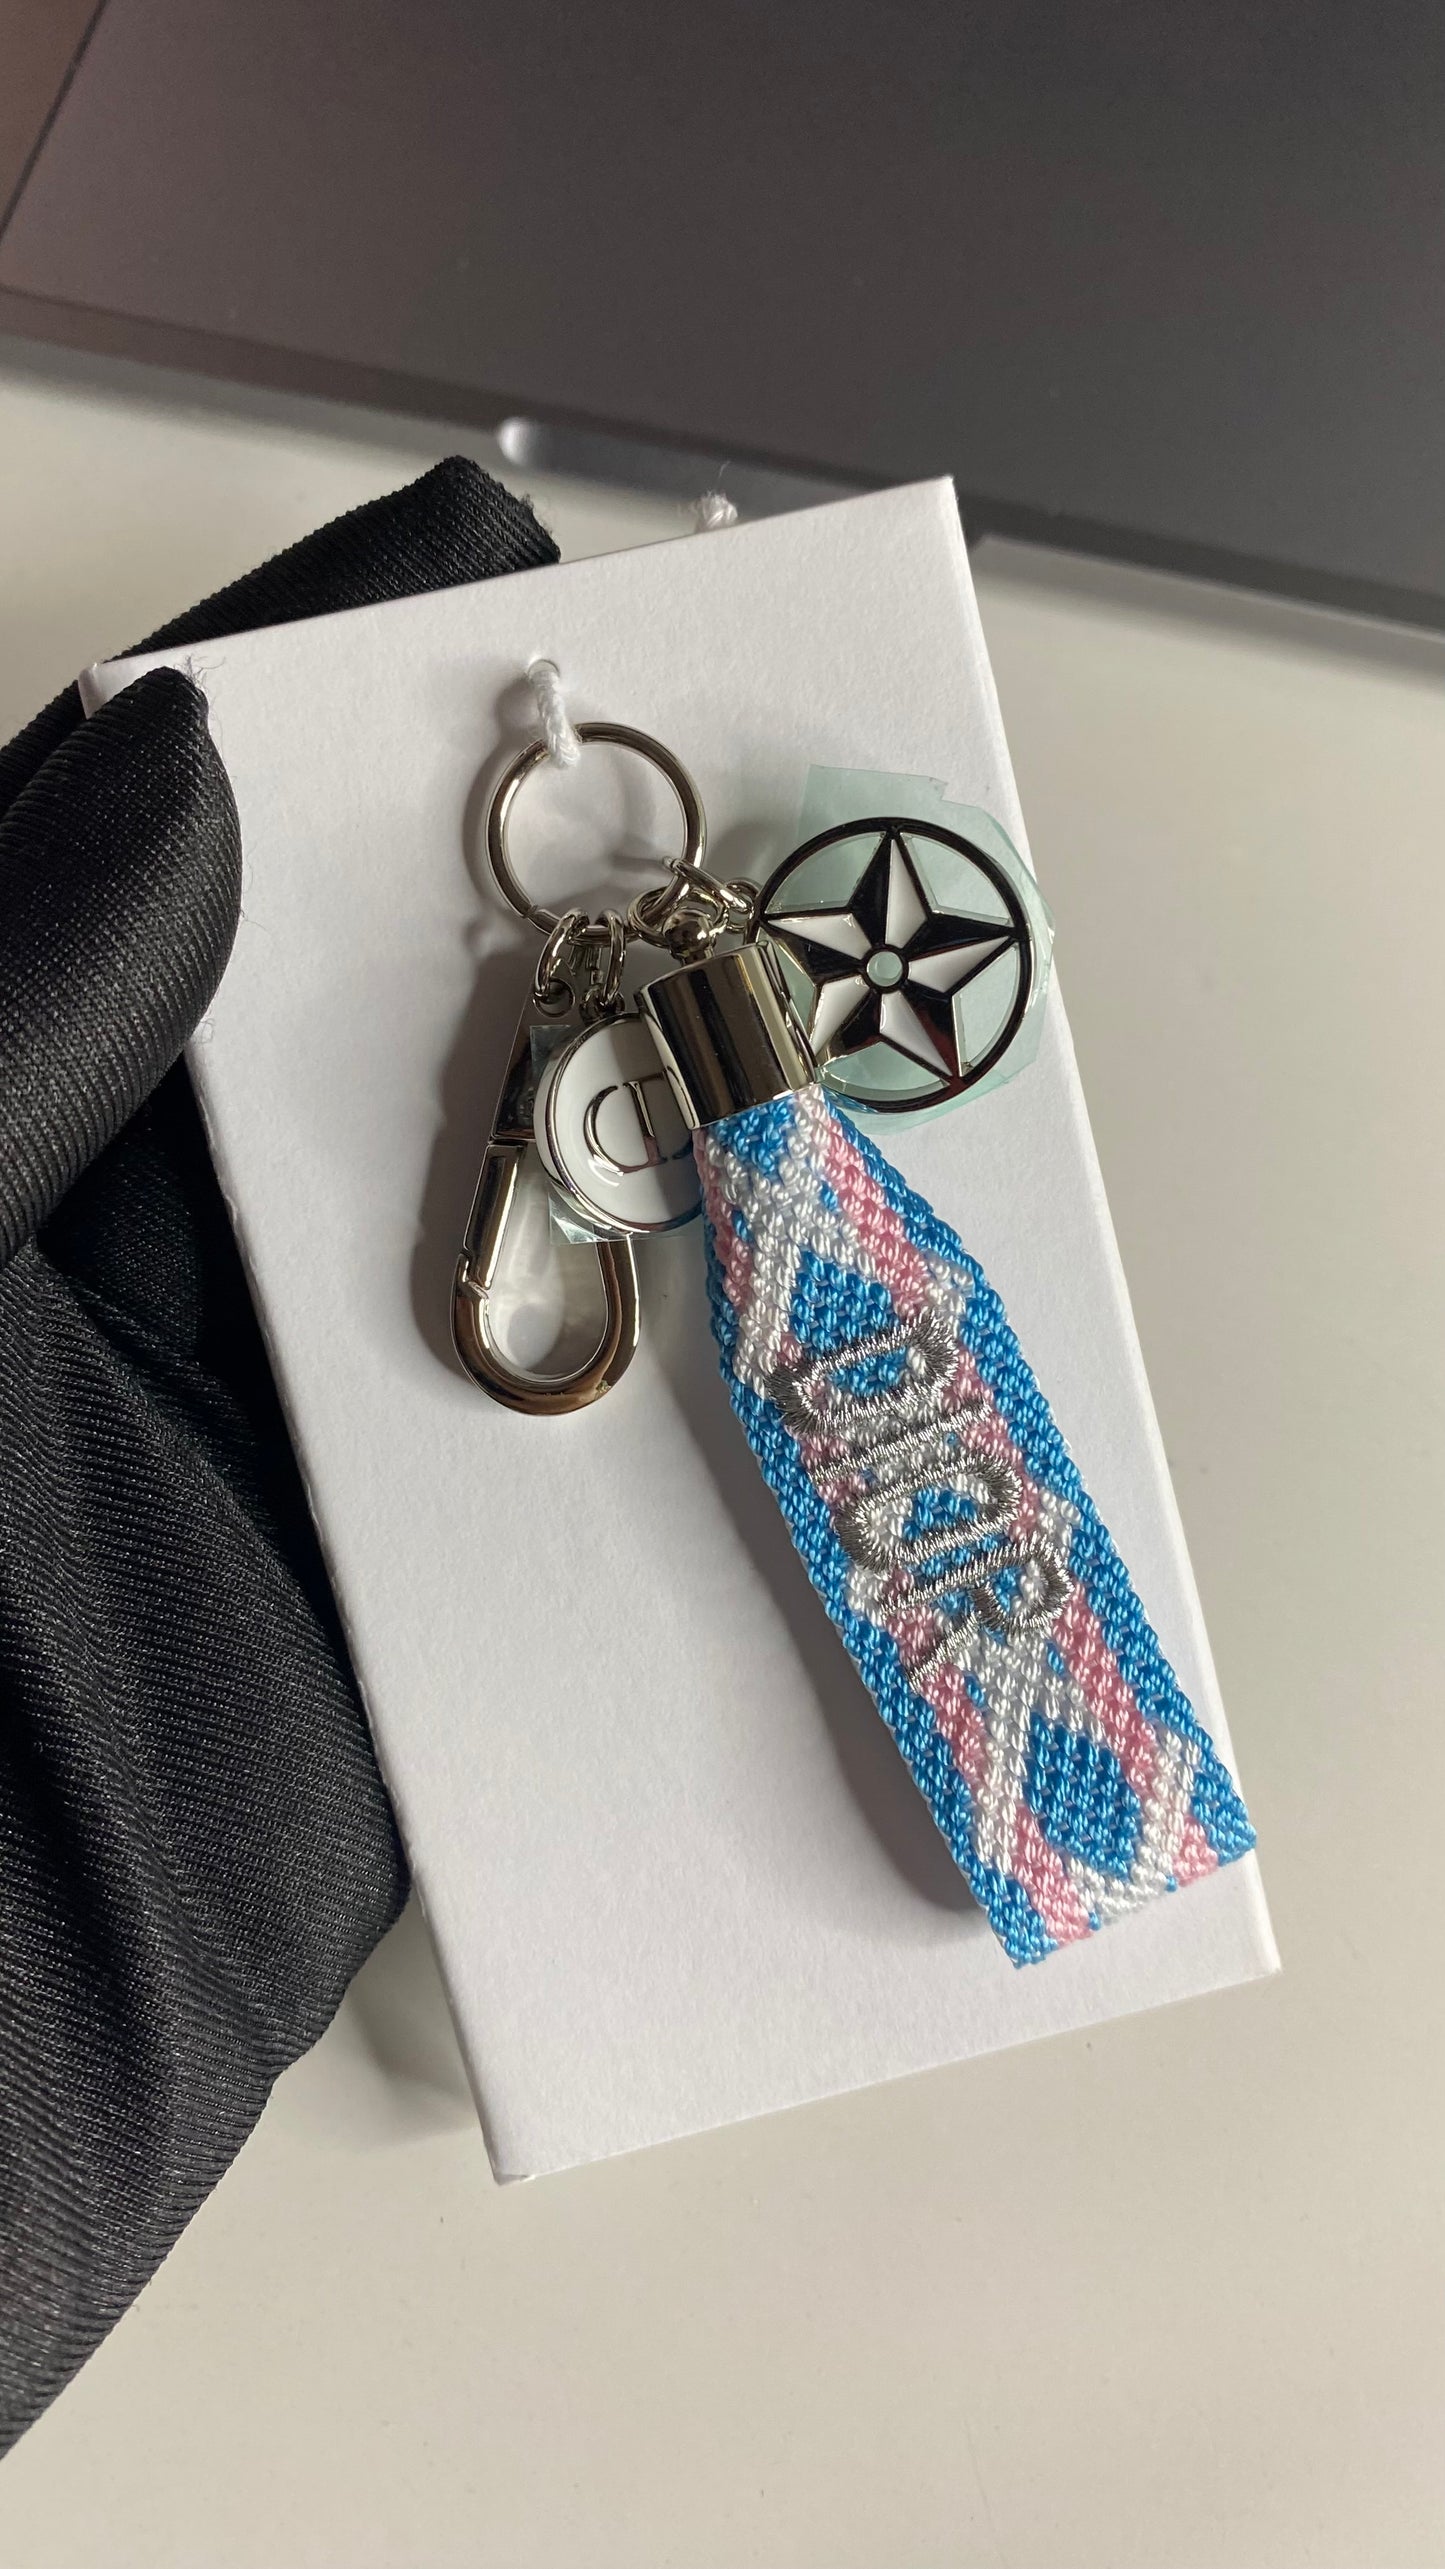 Dior keychain (Blue, Pink, & White)